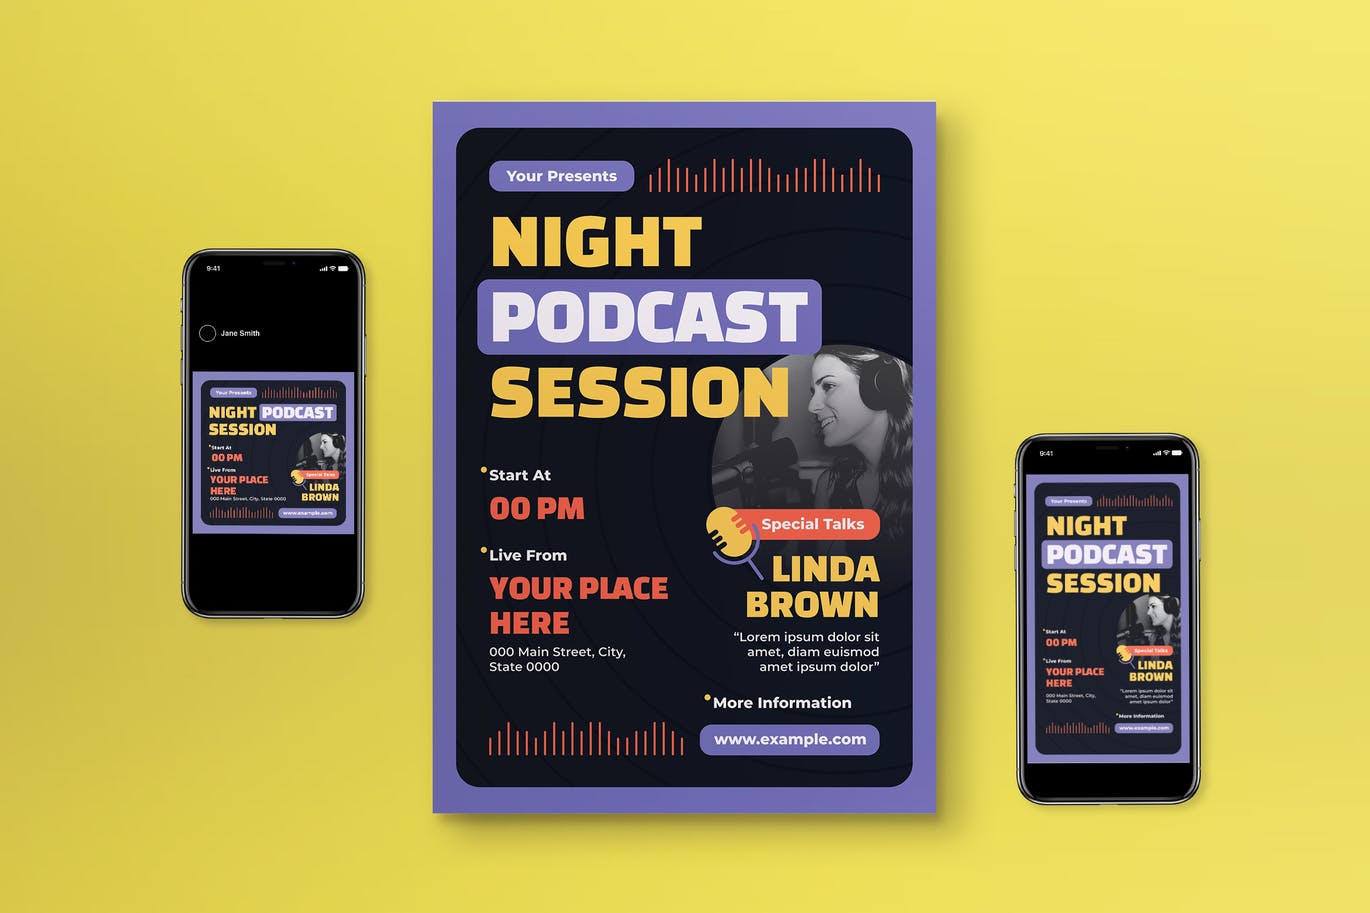 播客会议传单模板下载 Podcast Session Flyer Set 设计素材 第1张